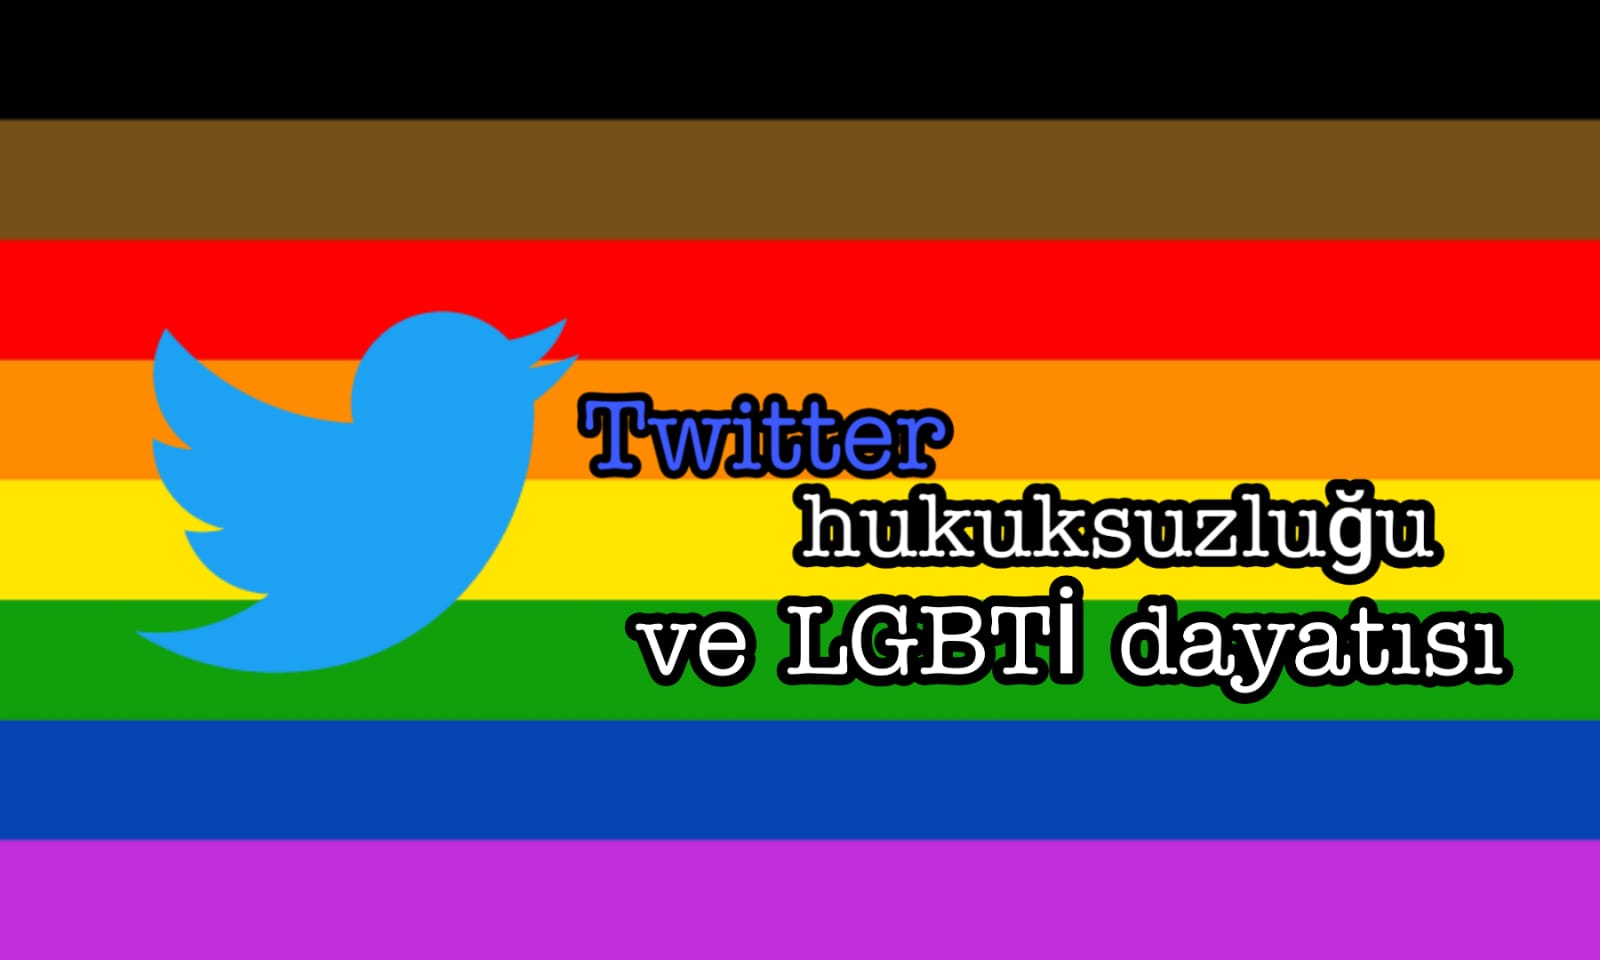 Twitter hukuksuzluğu ve LGBTİ dayatısı